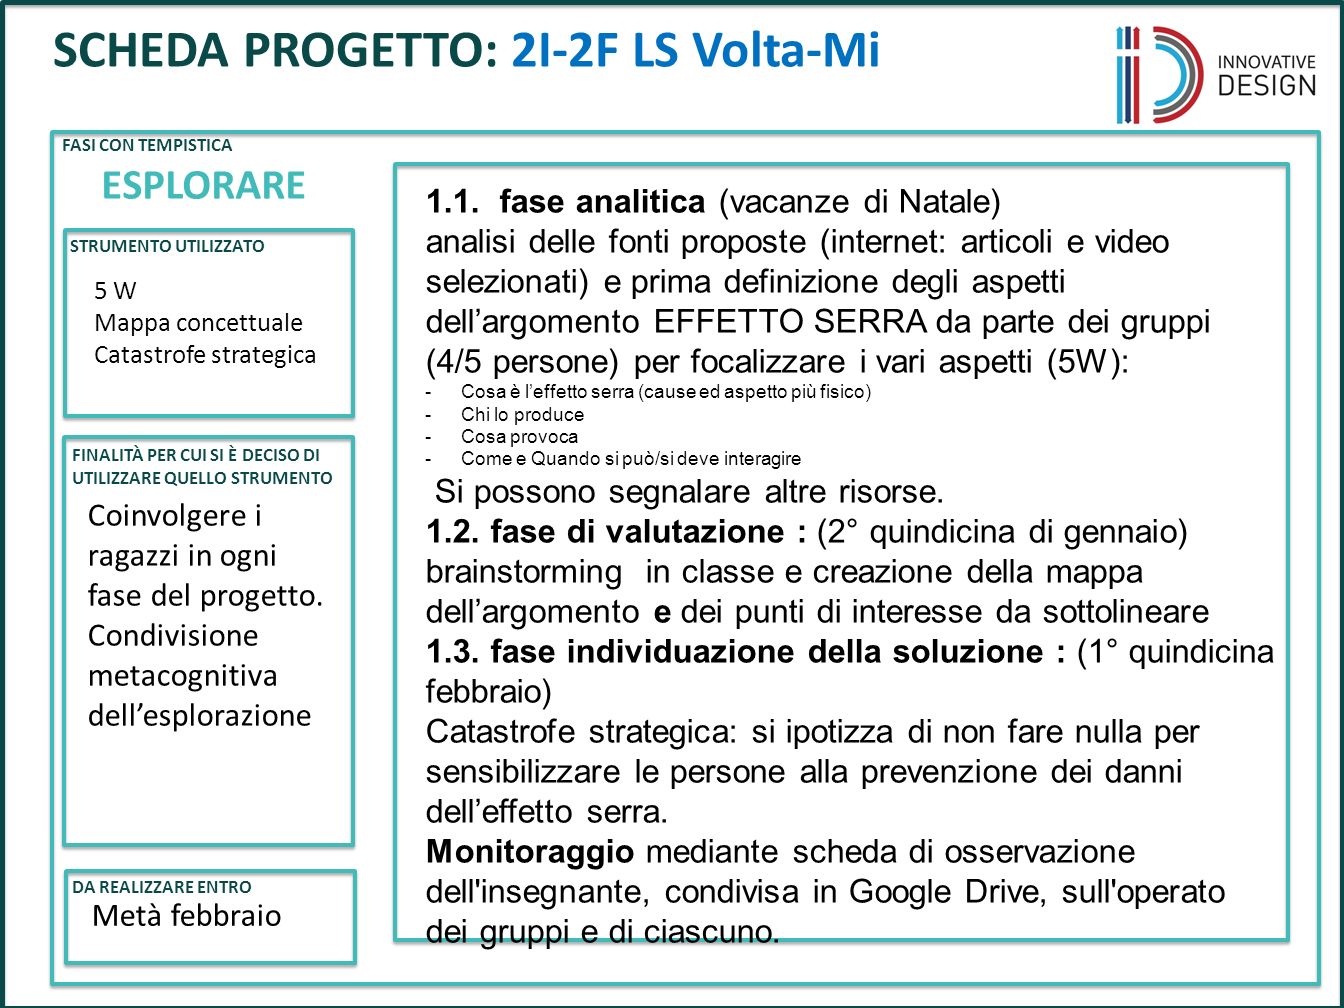 Progetto Effetto Serra Protagonista La Classe 2 F Ls A Volta Di Milano Docente Flavia Giannoli Fisica Ppt Scaricare